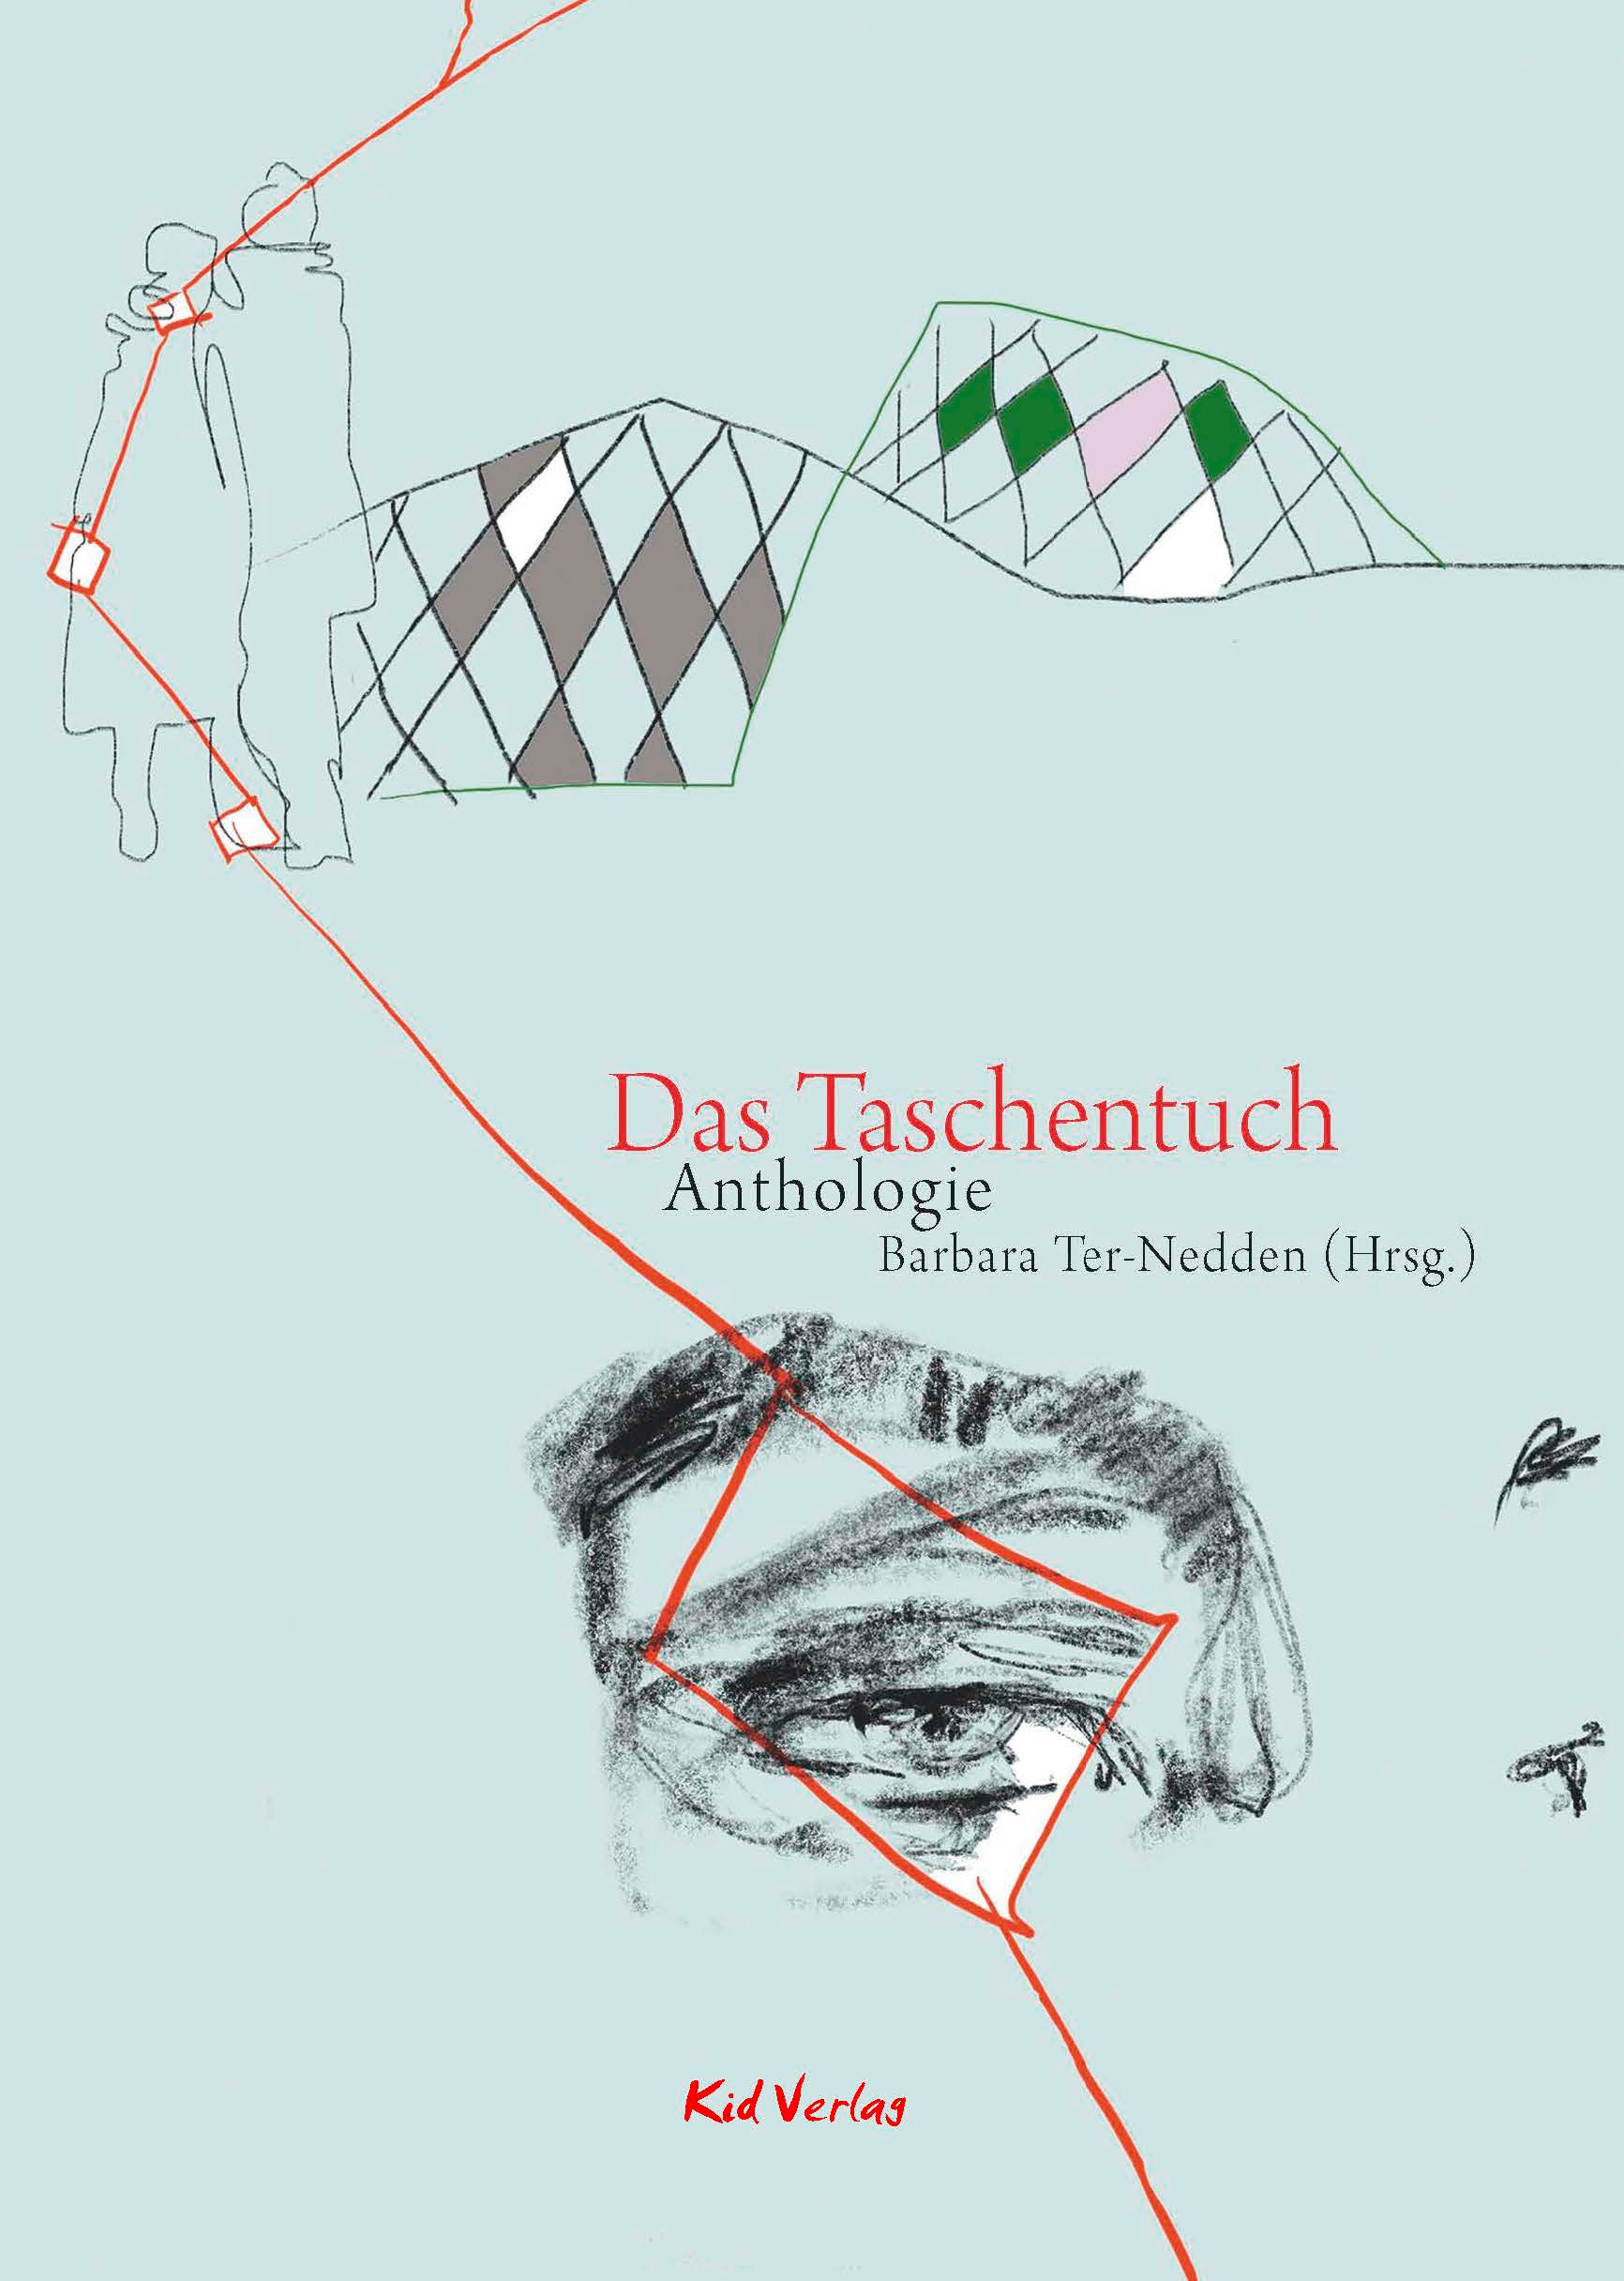 Das Taschentuch – Anthologie des Godesberger Literaturpreises 2018 Parkbuchhandlung Buchhandlung Bonn Bad Godesberg